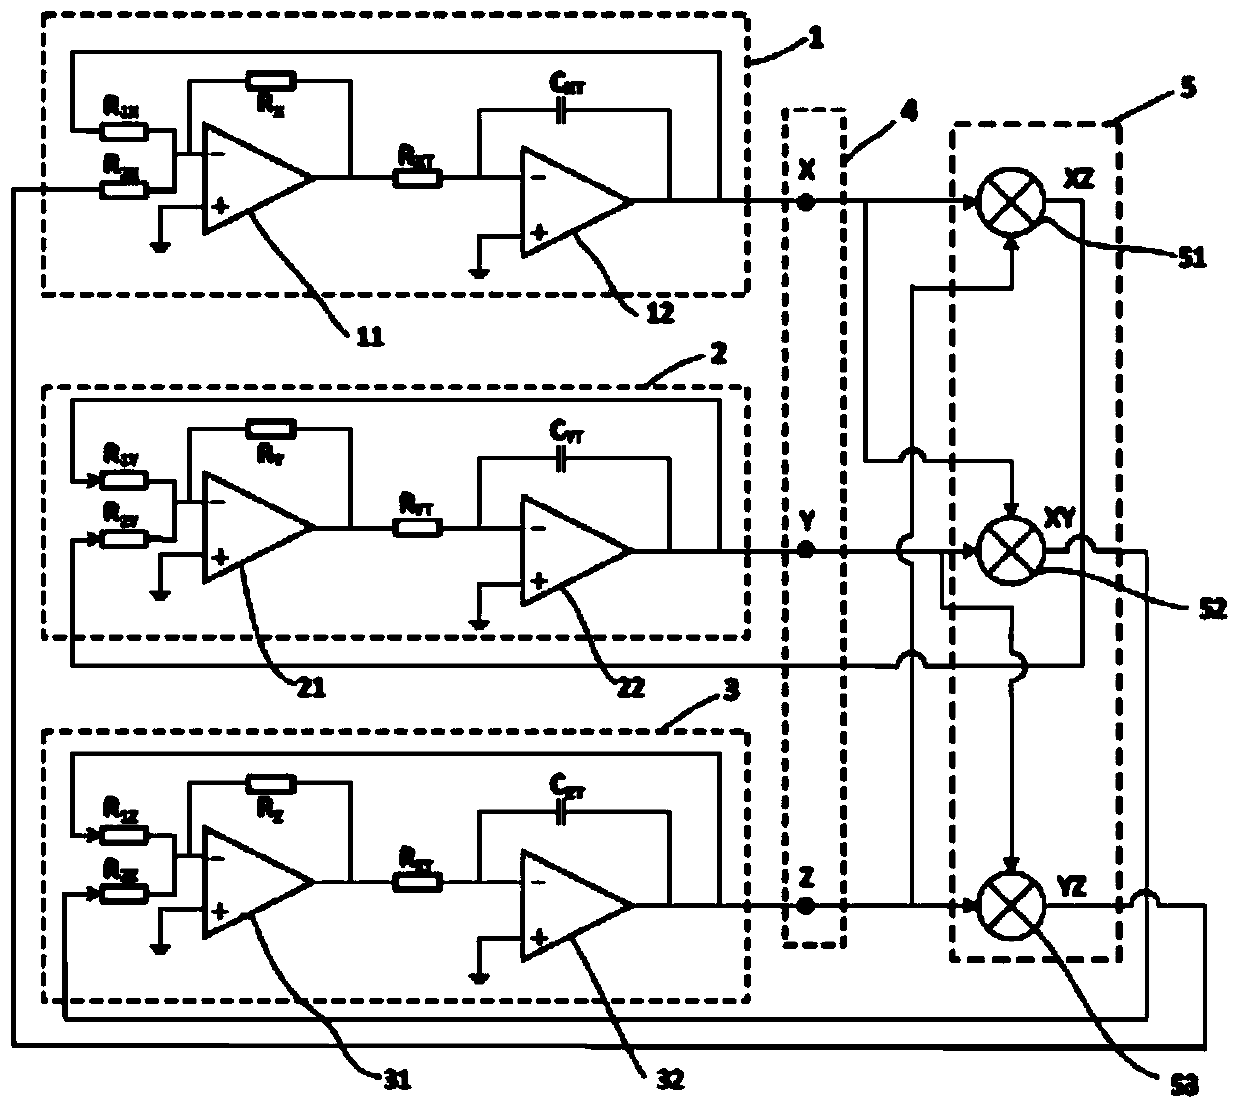 An Infinite State Machine Sequential Cloud Signal Generator